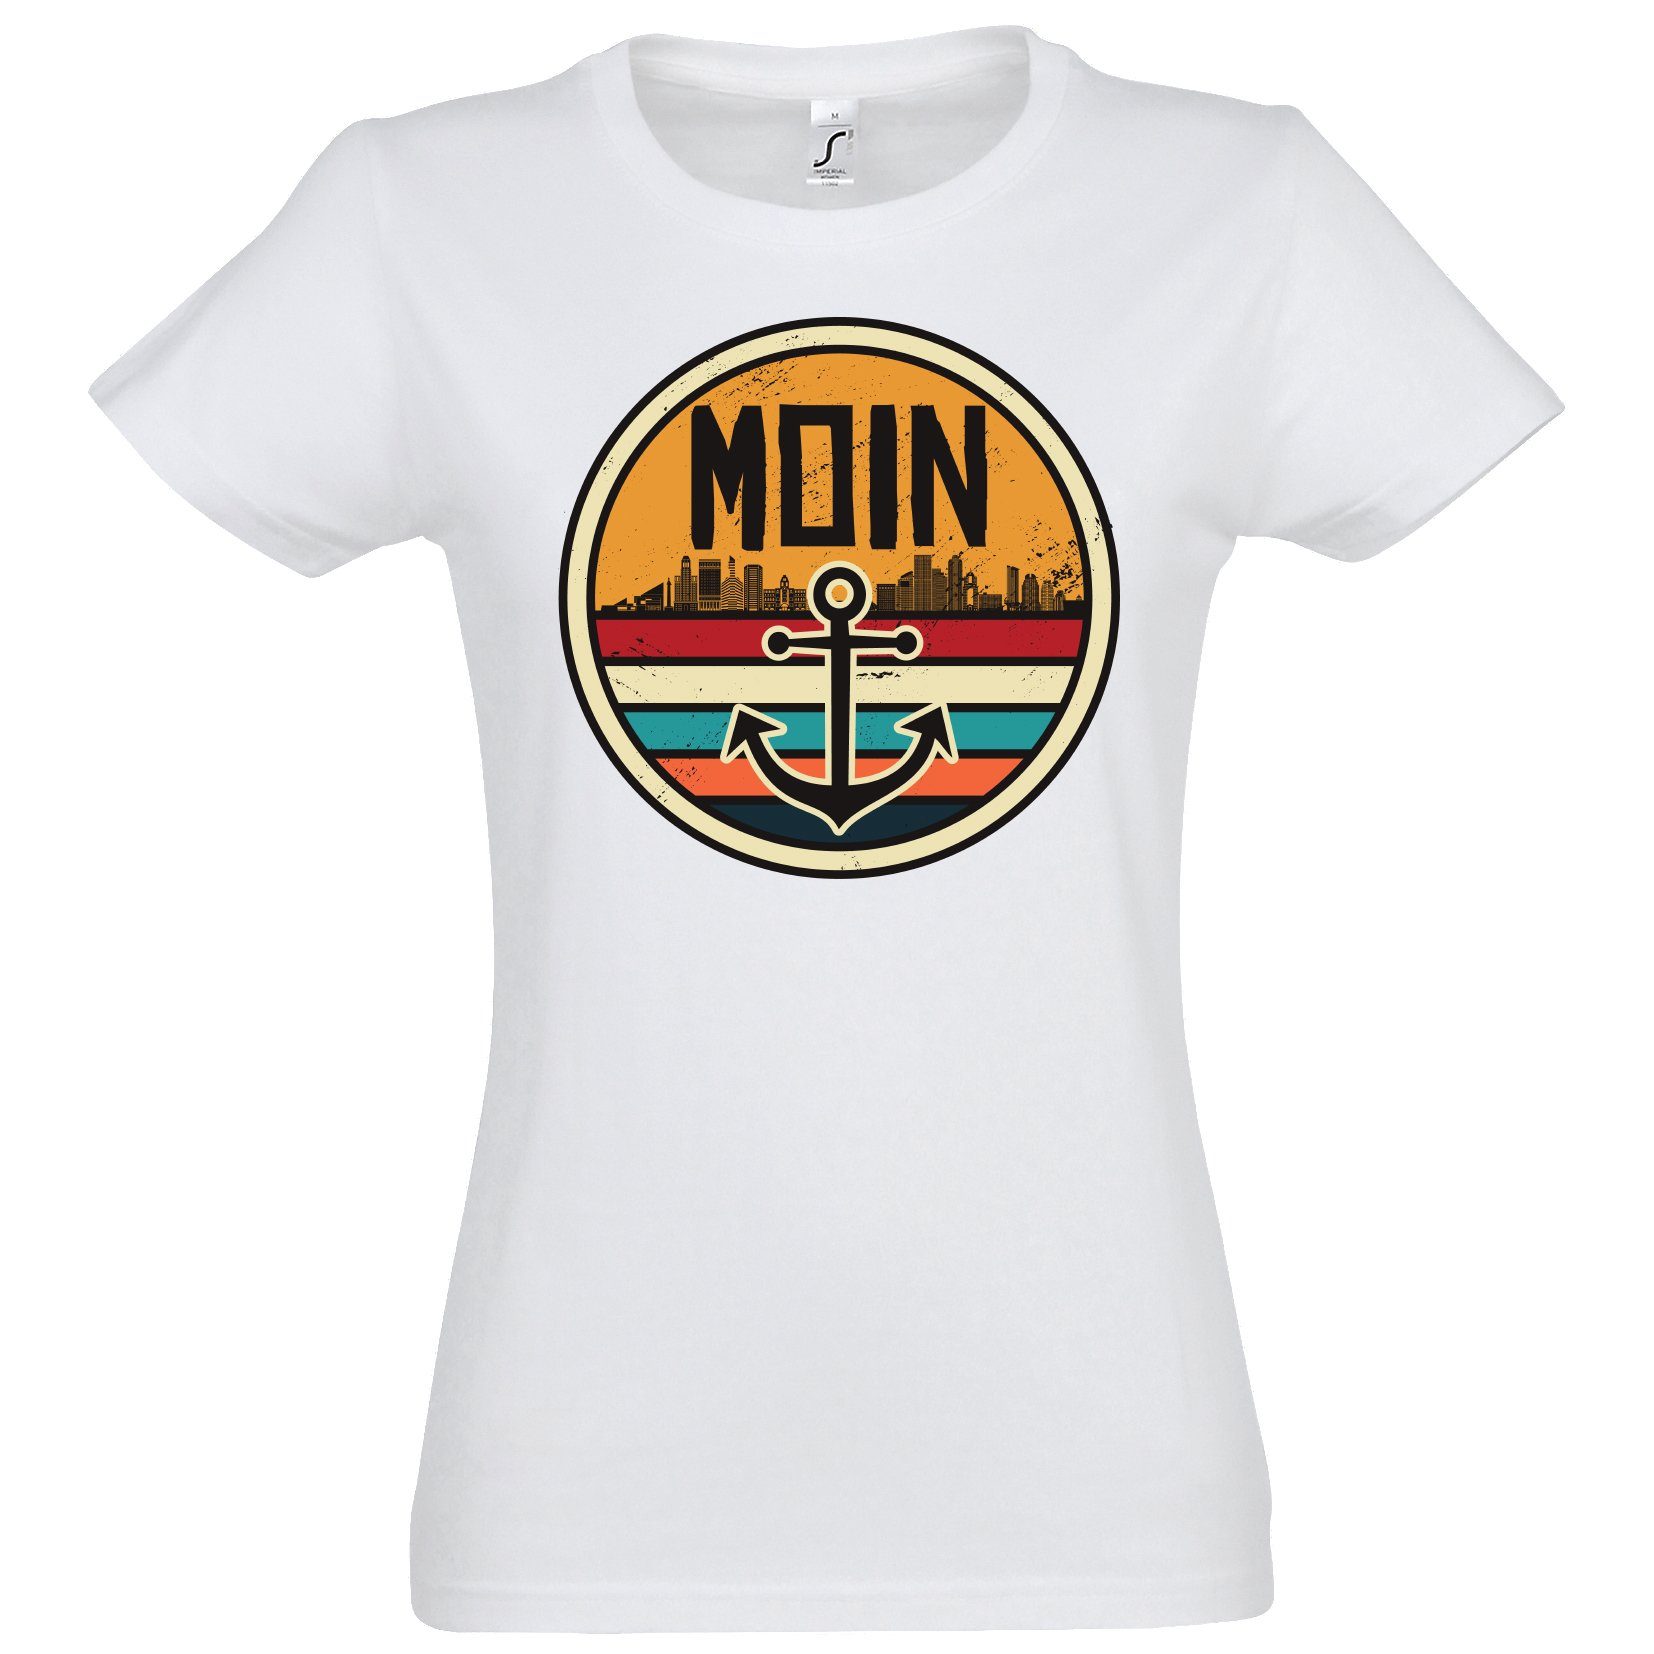 Youth Designz Print-Shirt Moin Spruch Damen T-Shirt mit Anker Logo Print und Spruch Weiß